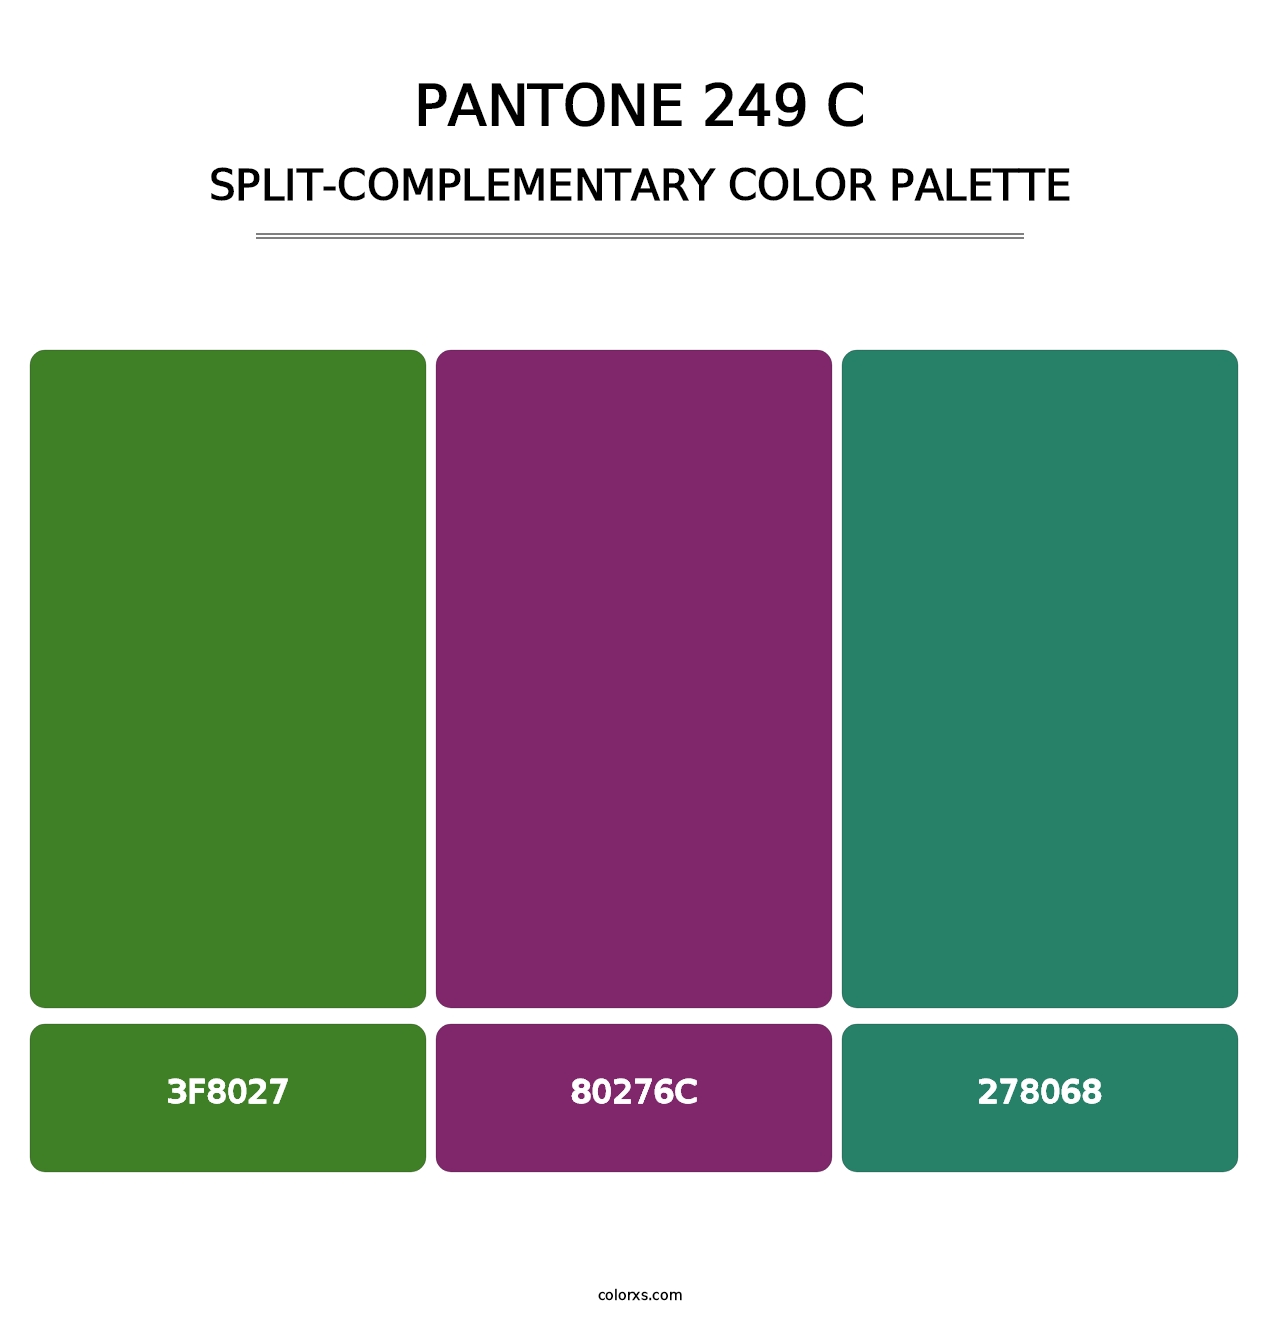 PANTONE 249 C - Split-Complementary Color Palette